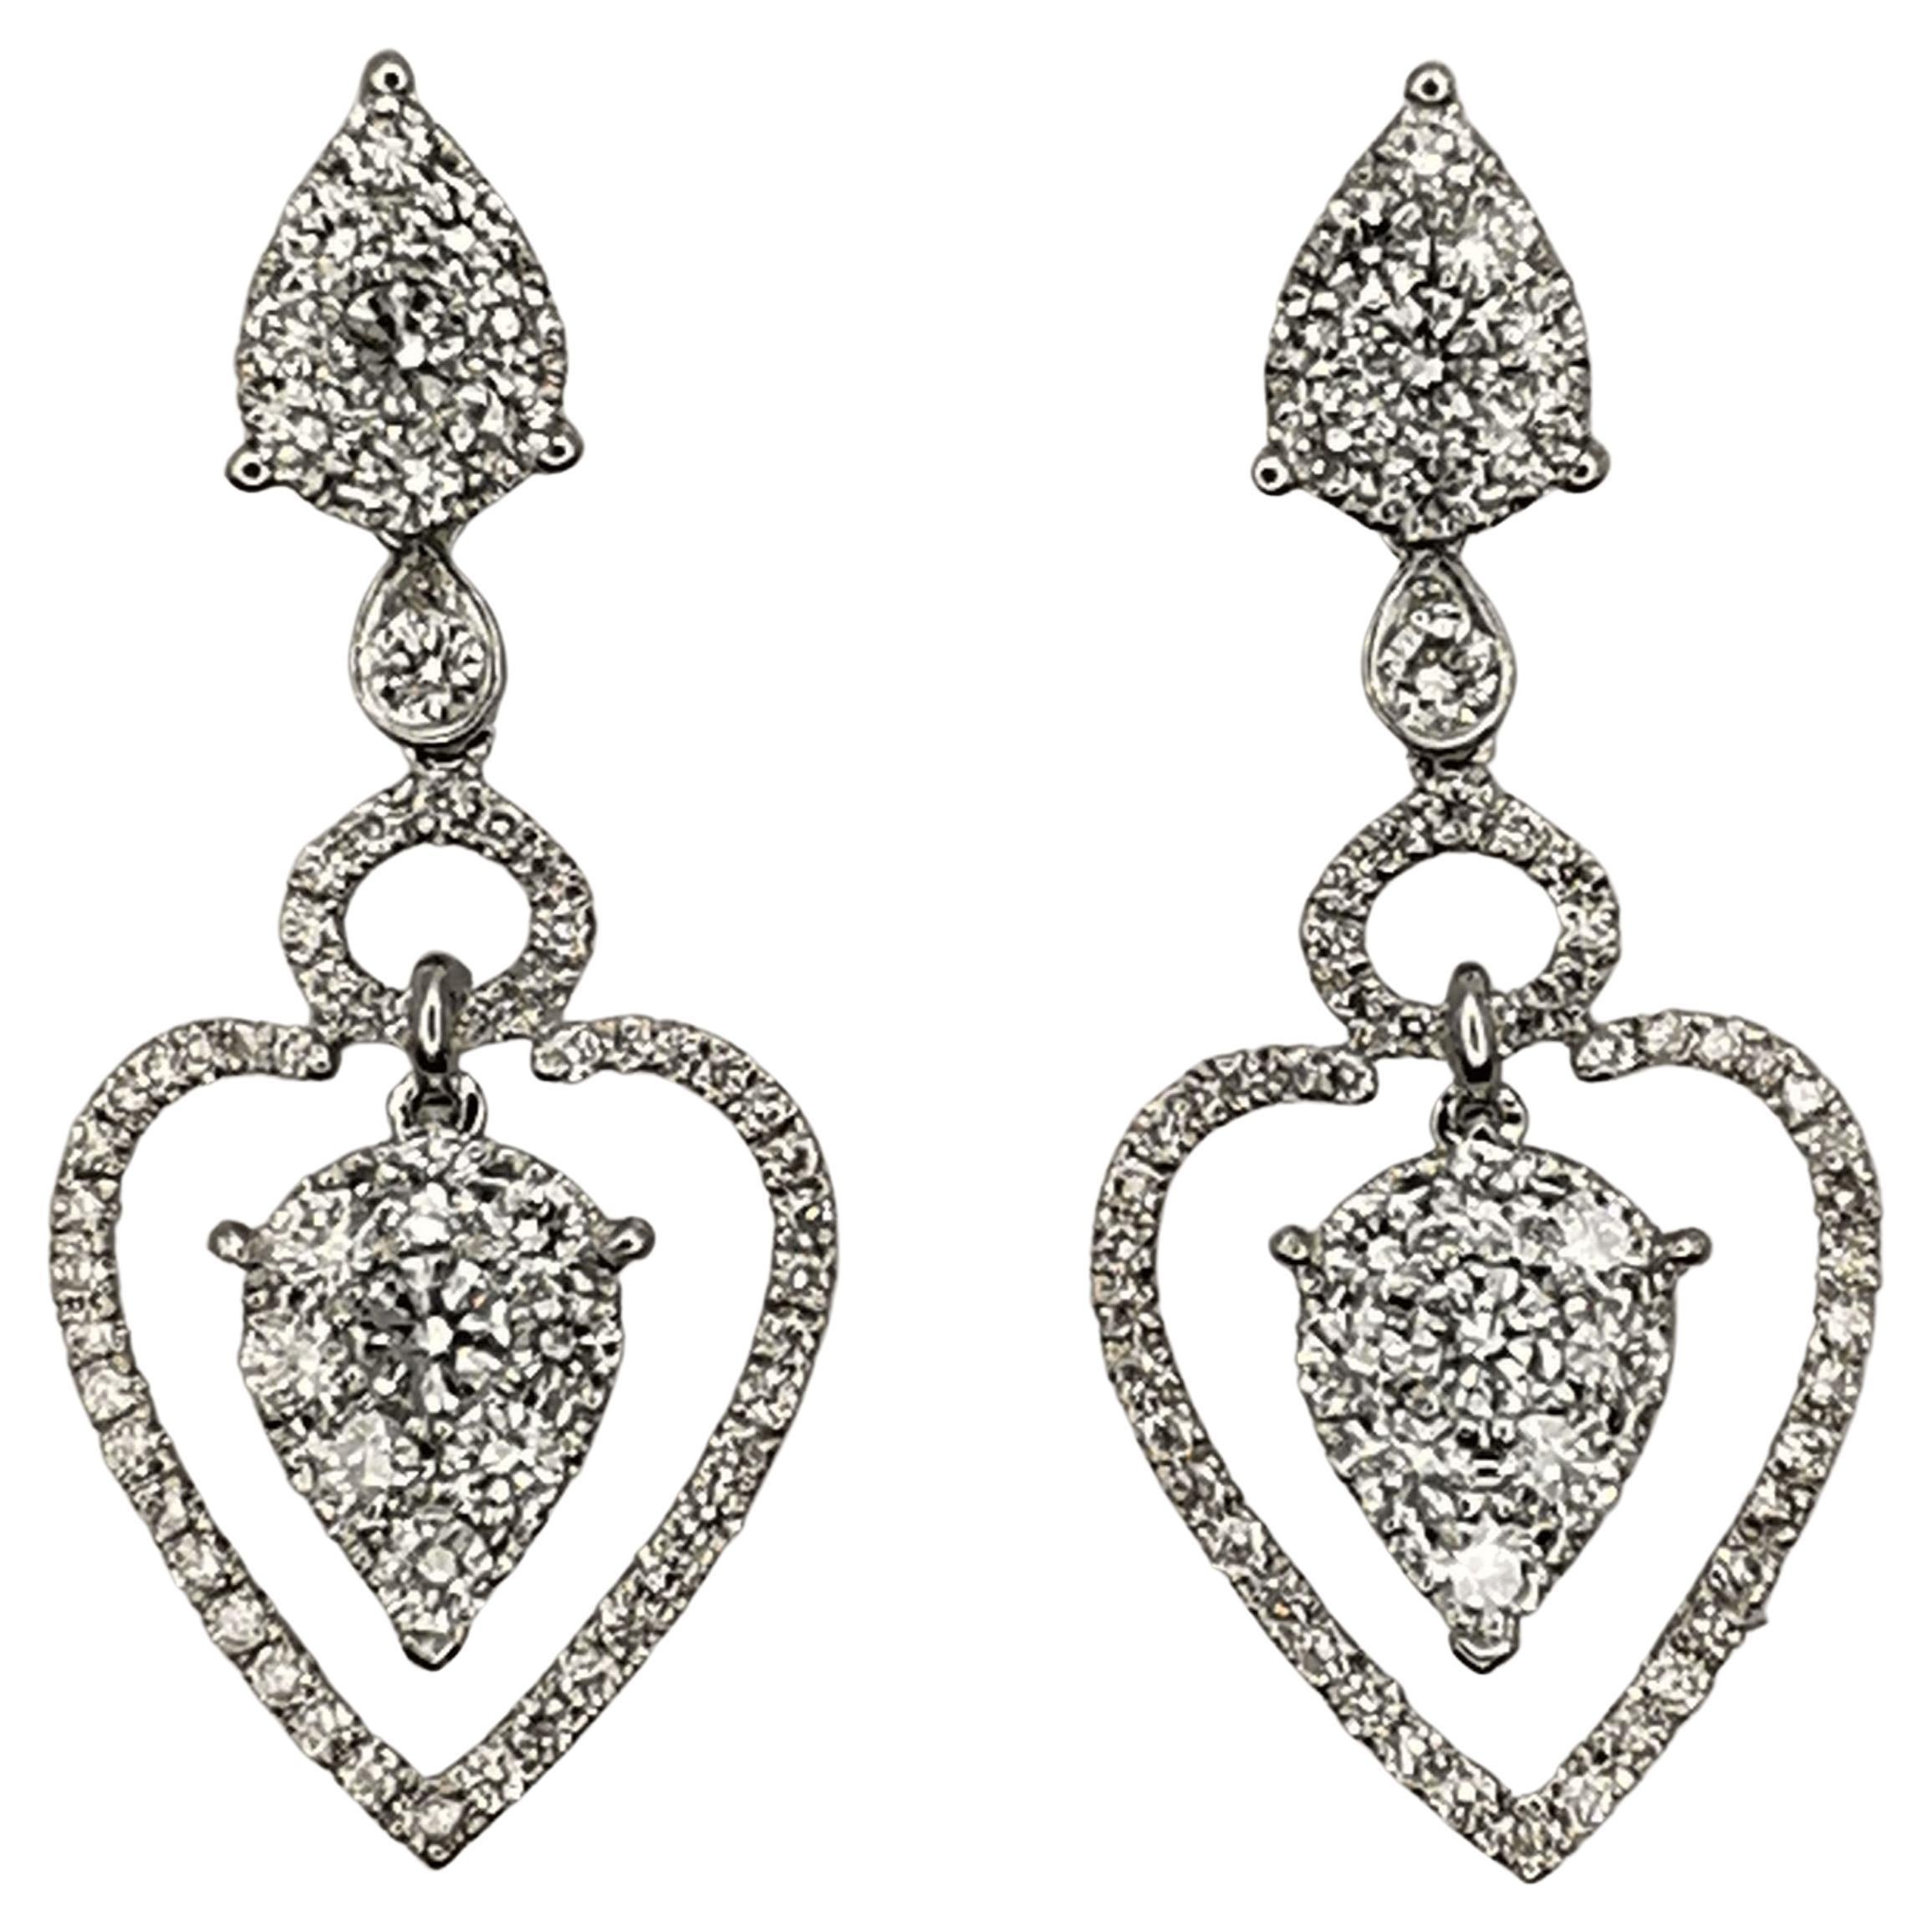 Triple Teardrop 1.69 Carat Diamond Dangling Earrings in 18K White Gold For Sale